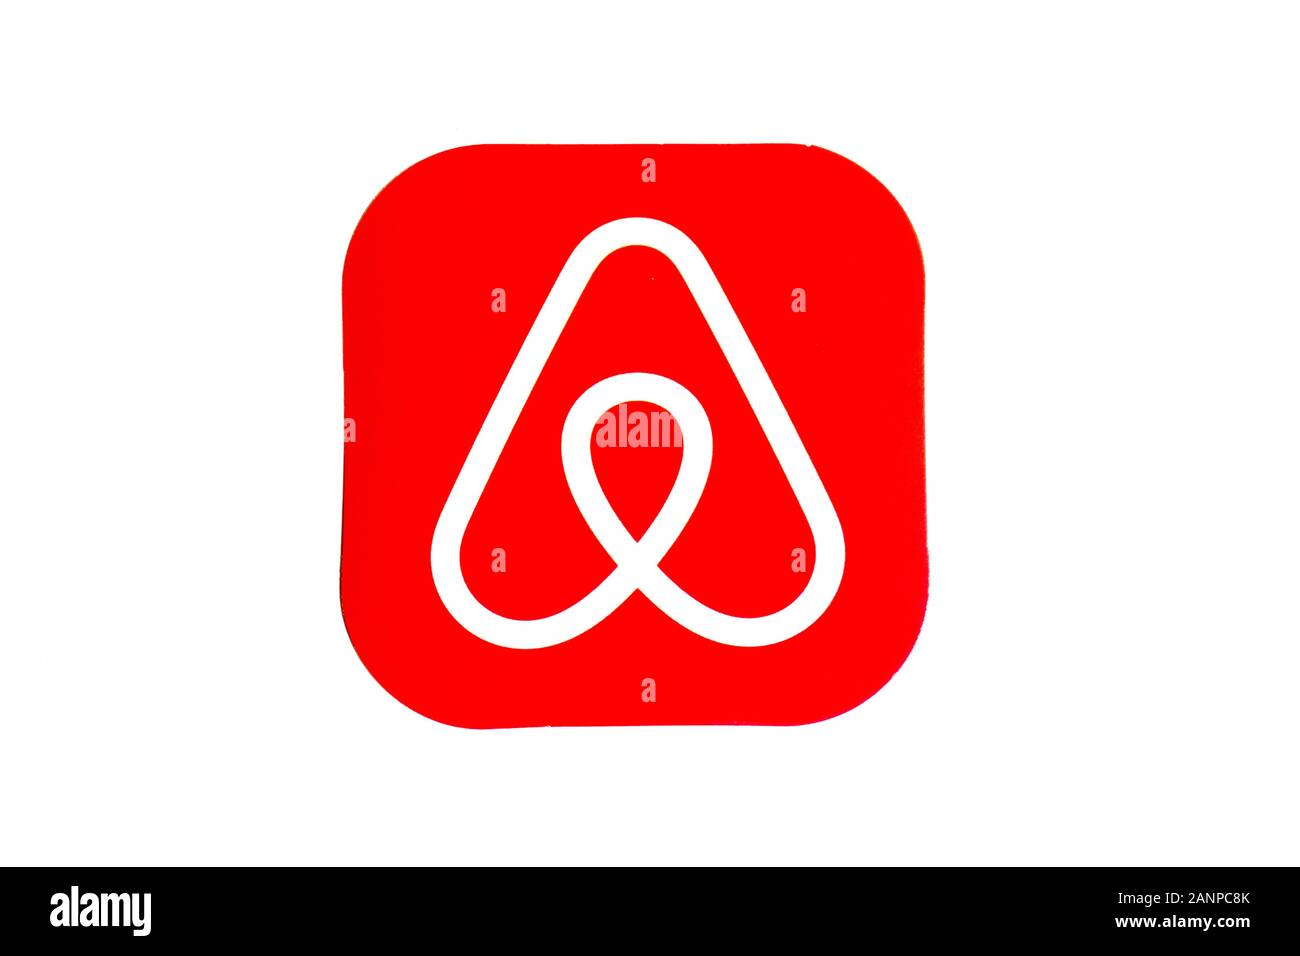 Los Angeles, Californie, États-Unis - 17 janvier 2020: Airbnb app logo sur fond blanc, éditorial illustratif Banque D'Images